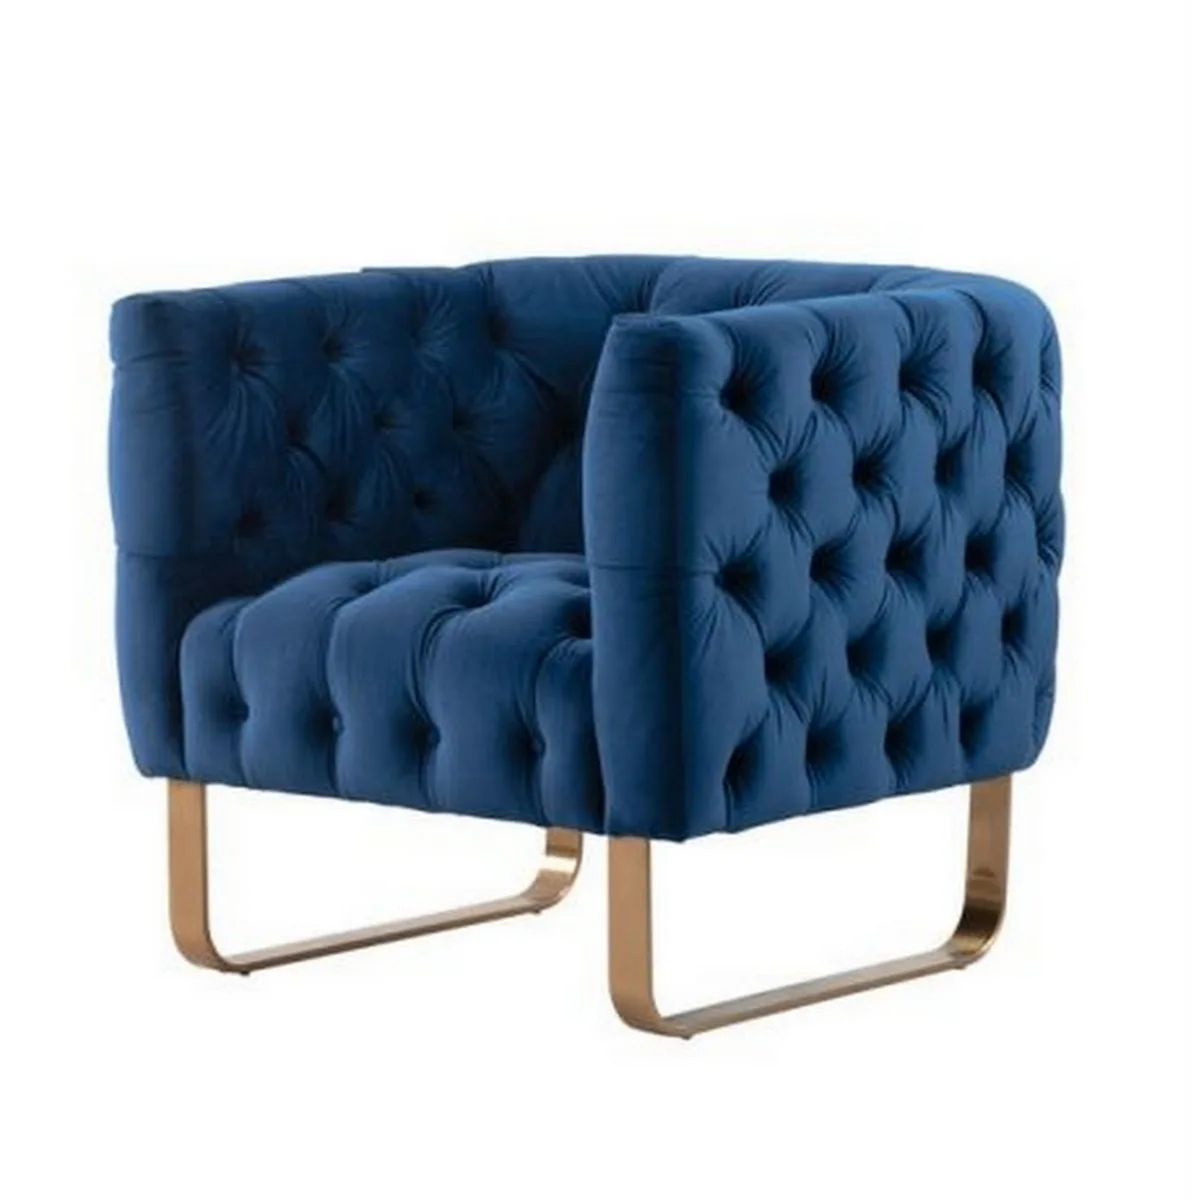 Grosvenor armchair - navy blue